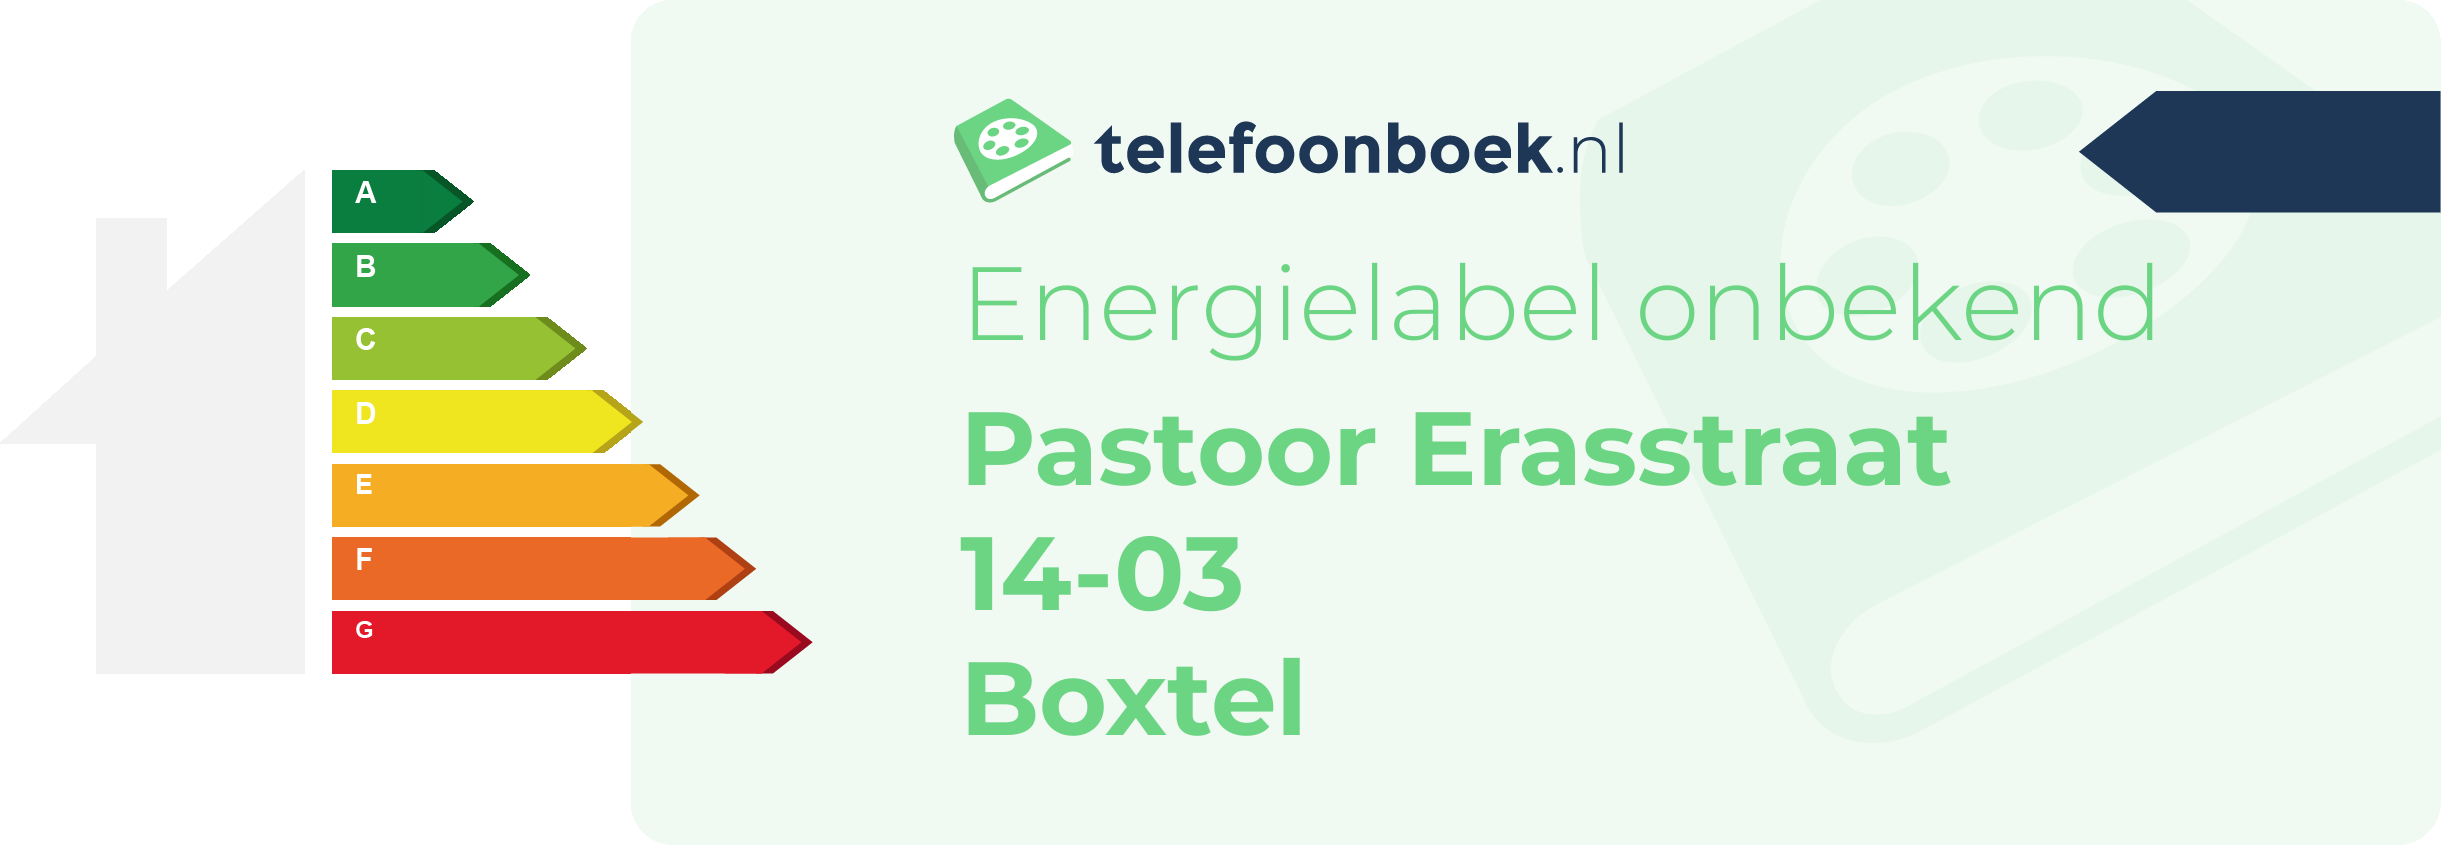 Energielabel Pastoor Erasstraat 14-03 Boxtel